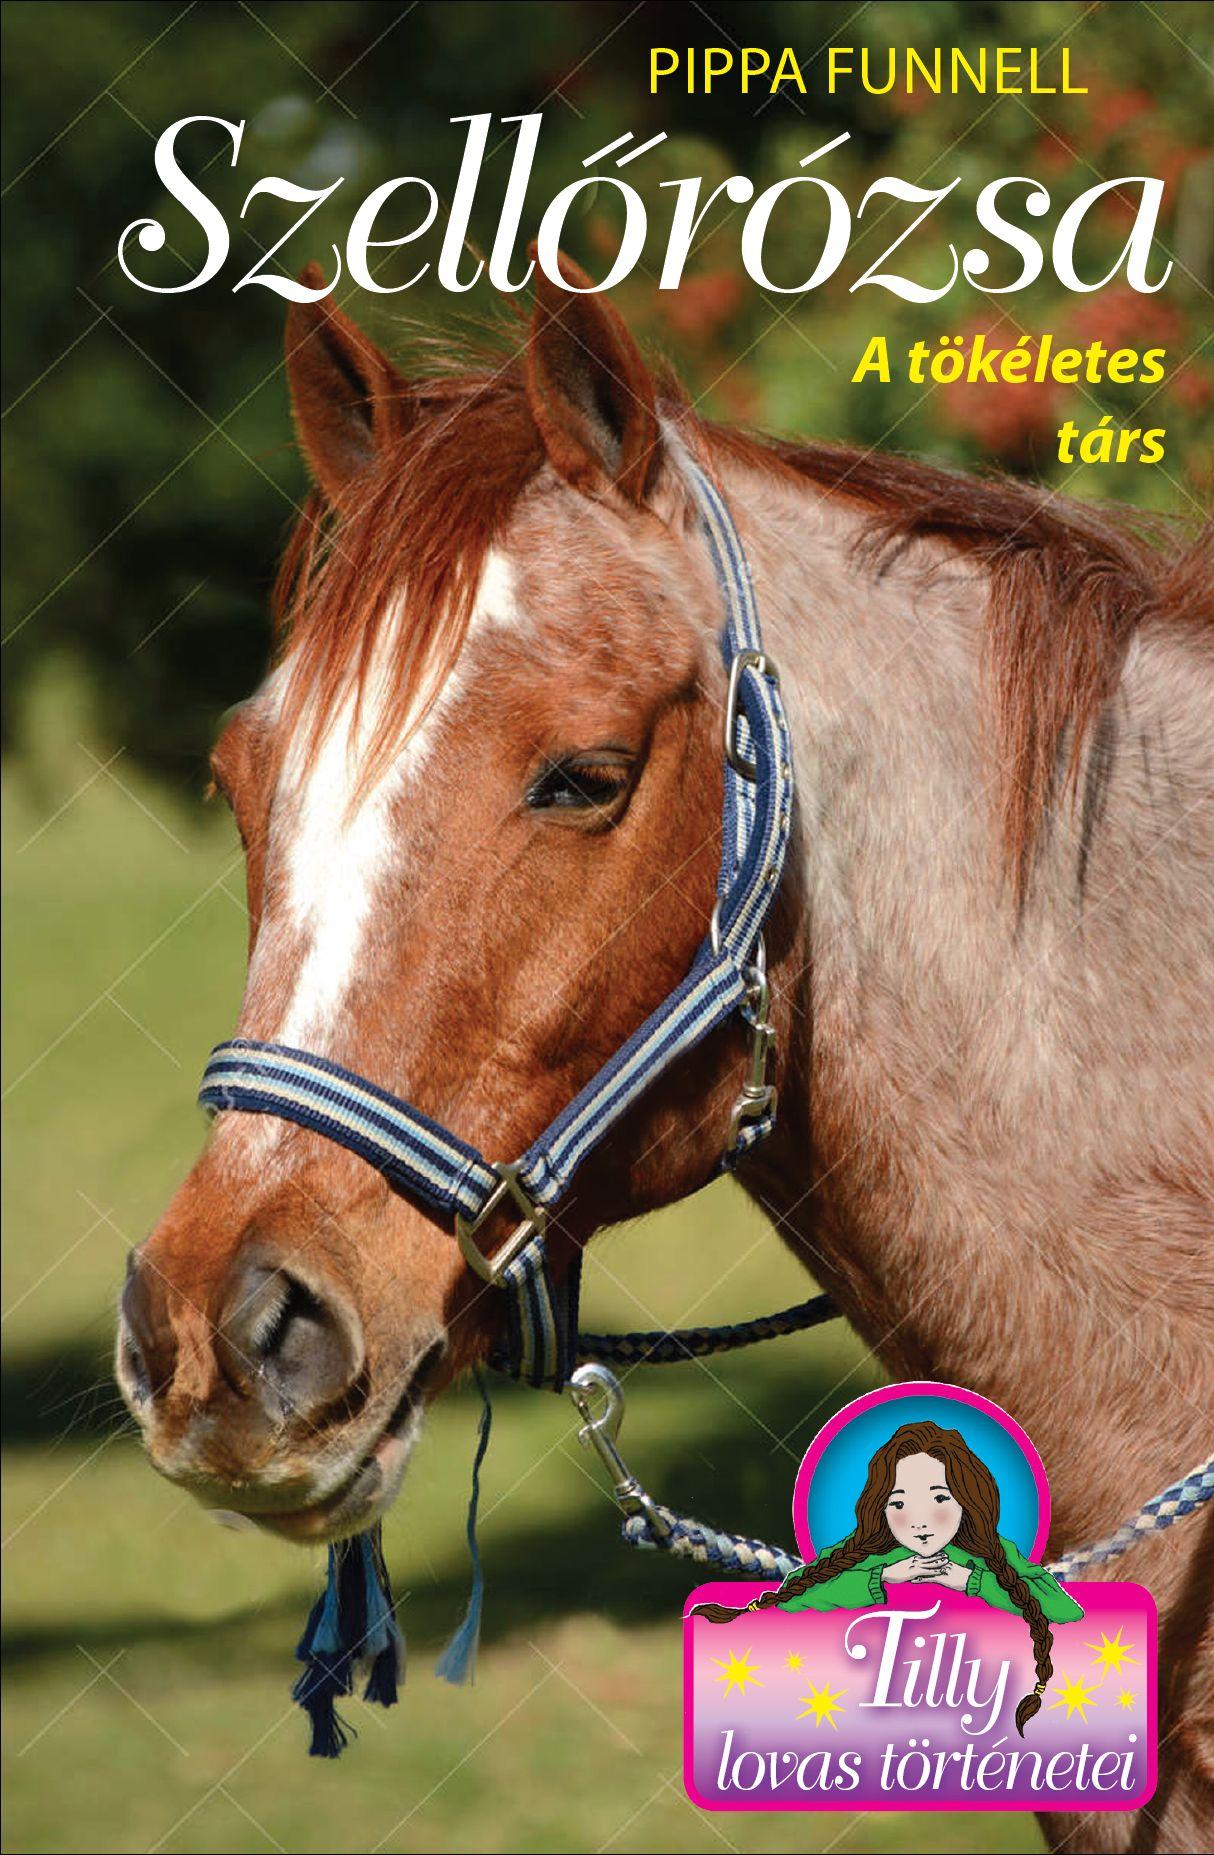 Pippa Funnell - Tilly lovas történetei 3. - Szellőrózsa - A tökéletes társ